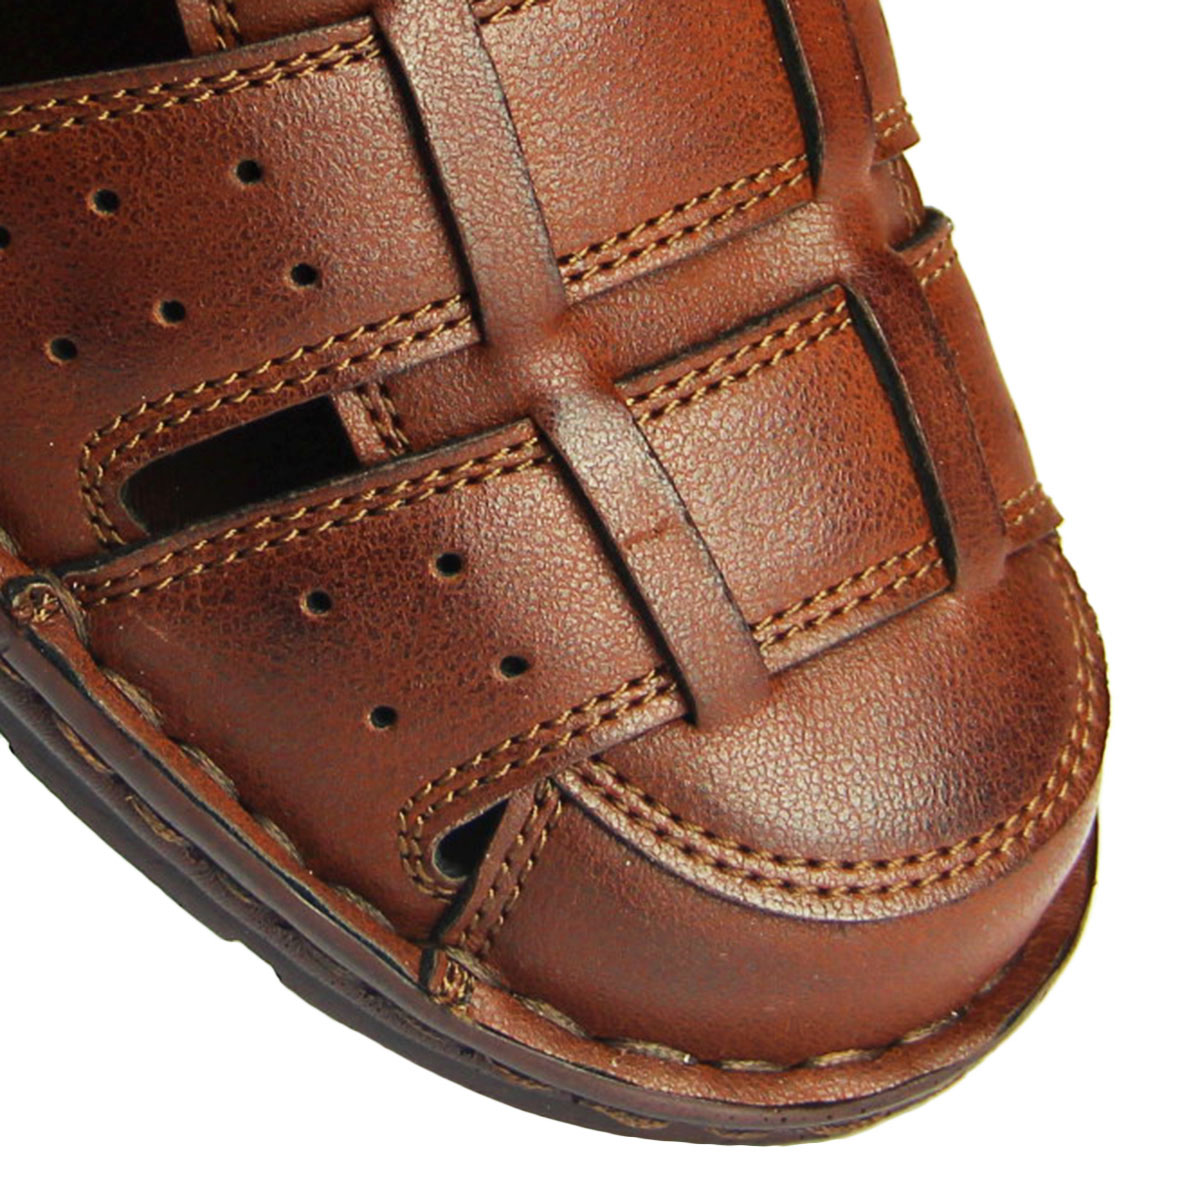 Каталог Босоножки/Сандалии мужские Фабрика обуви